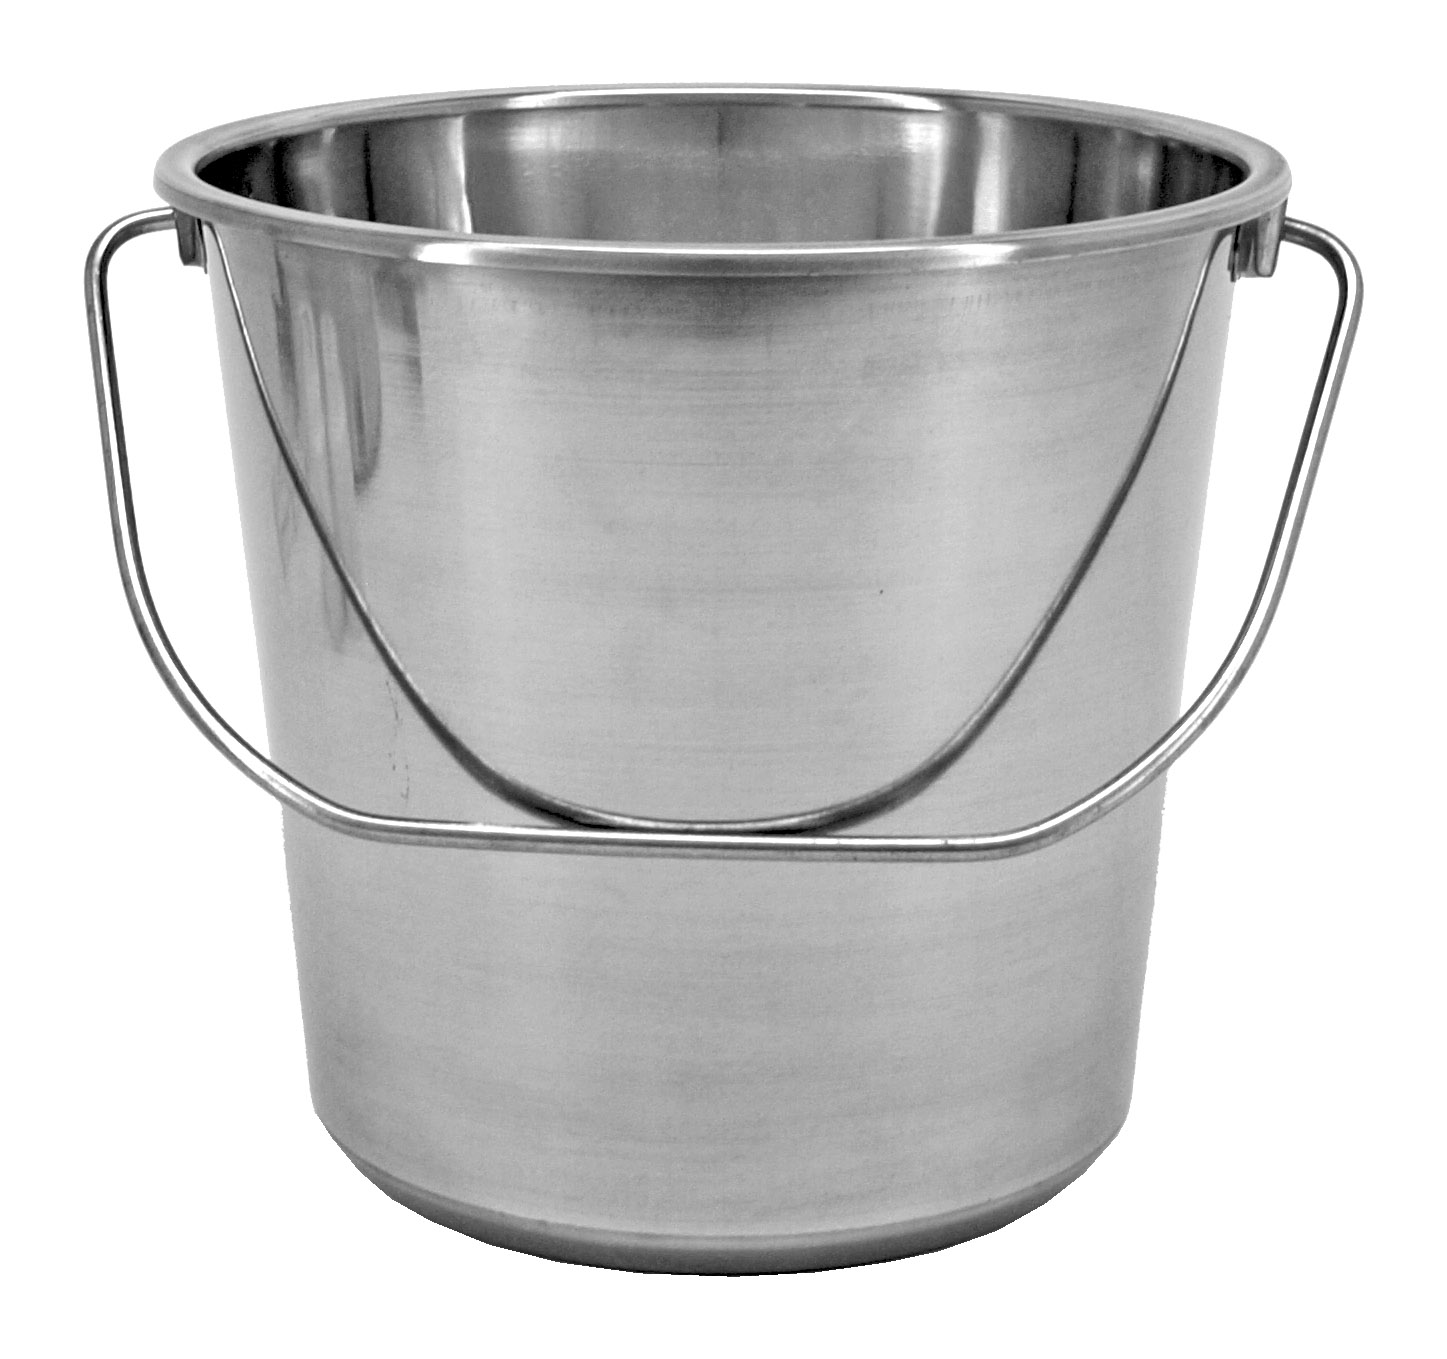 2.37 Gallon Stainless Steel Bucket